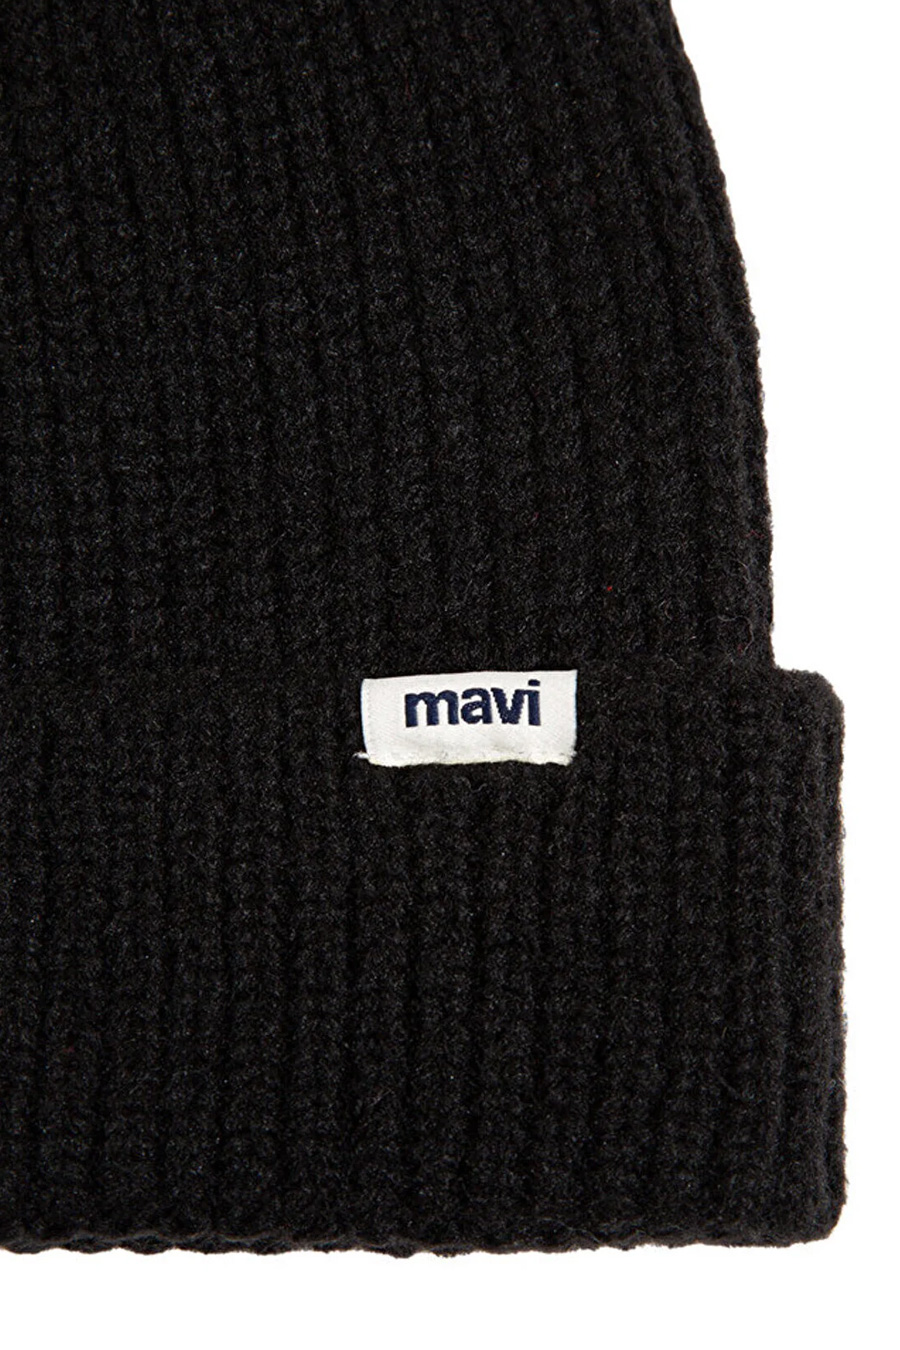 Žieminė kepurė MAVI 1910719-900